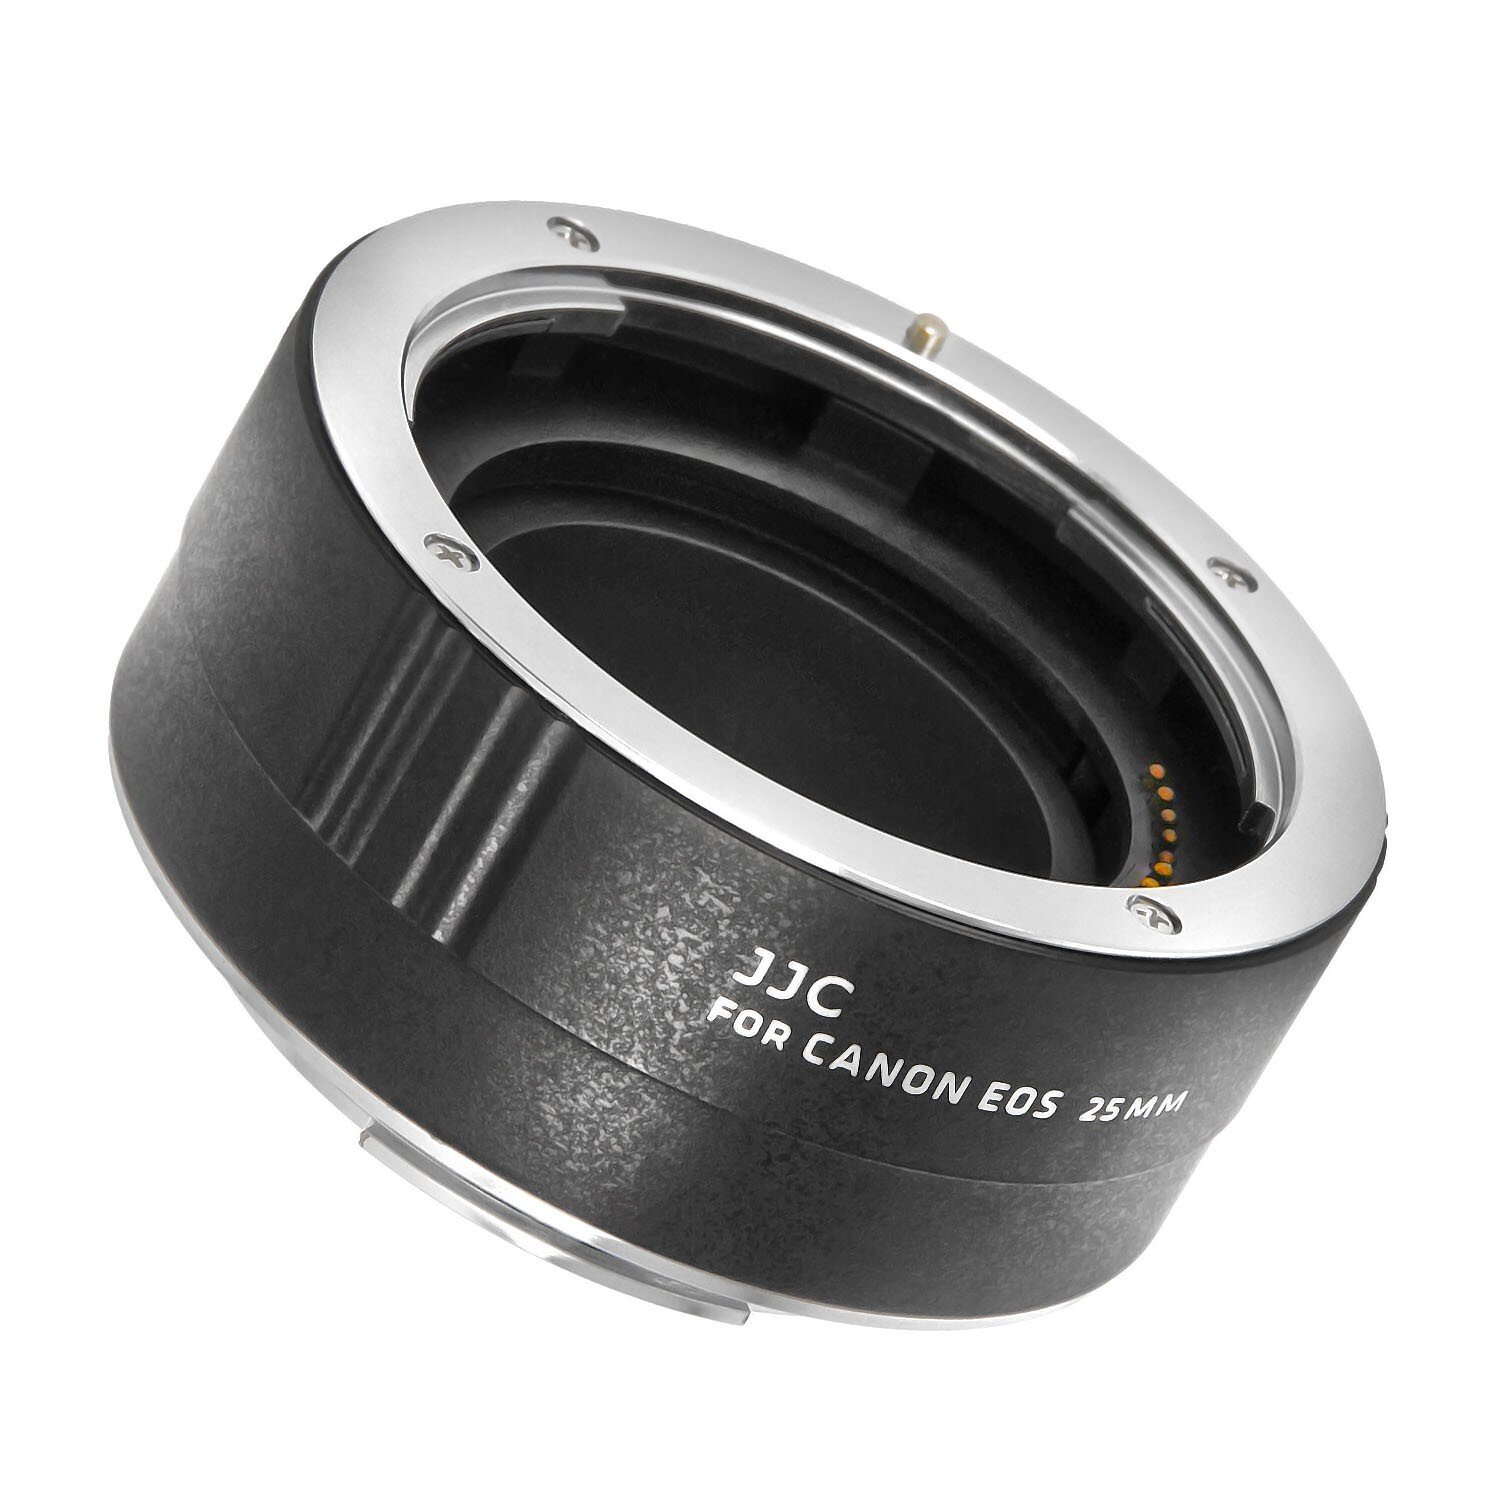 Impulsfoto 25mm Automatik Makro Zwischenring Extension Tube kompatibel für Canon EOS mit Autofokus Weiterleitung 